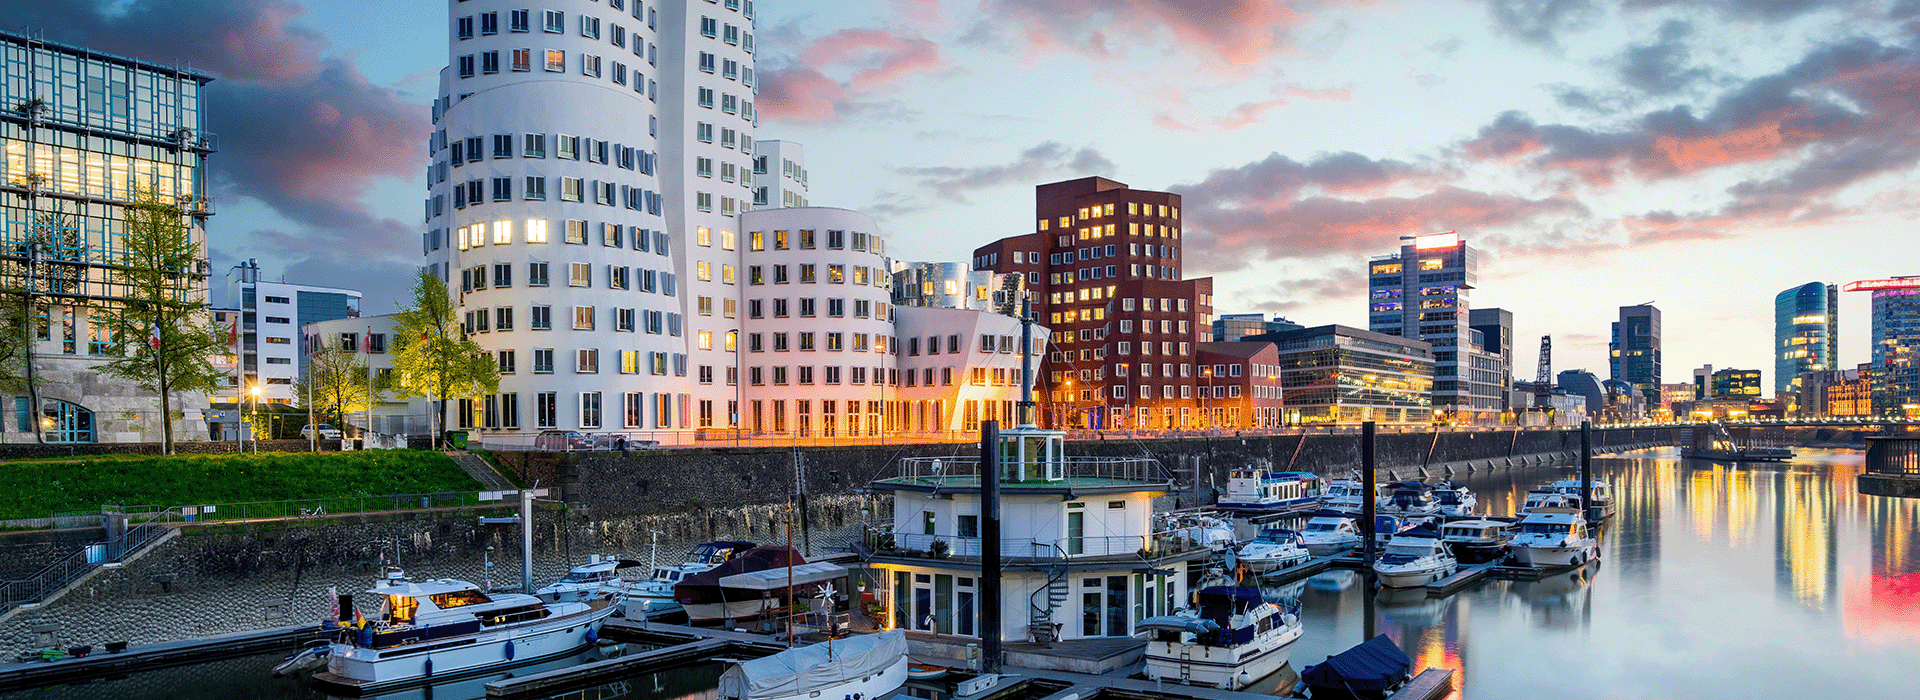 Stadtbild von Düsseldorf